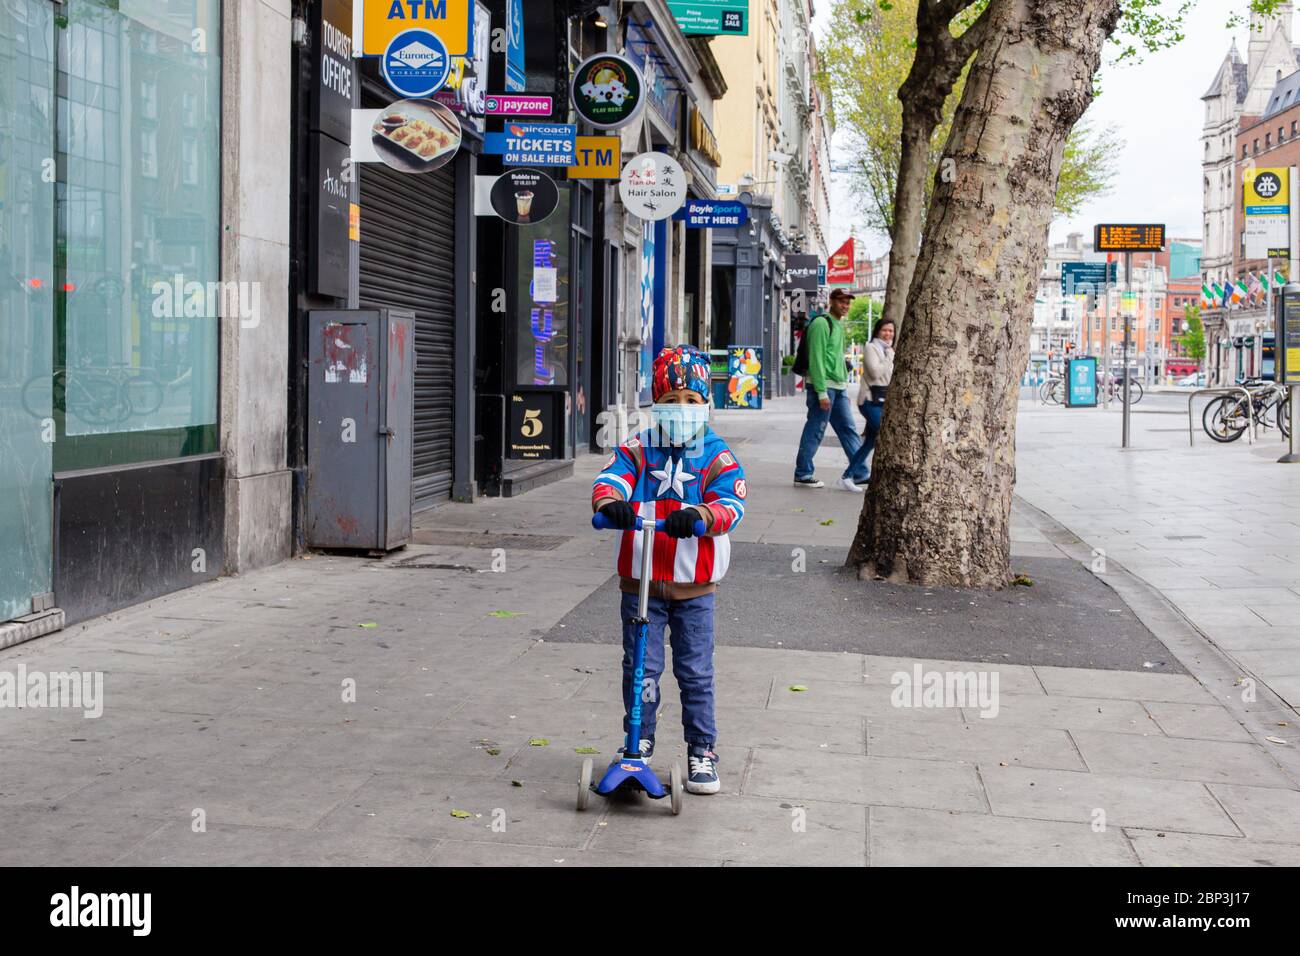 Garçon sur un scooter portant une veste superhéros et un masque facial protecteur qui se frayait à travers le Str Westmoreland déserté à Dublin pendant la pandémie de Covid-19 Banque D'Images